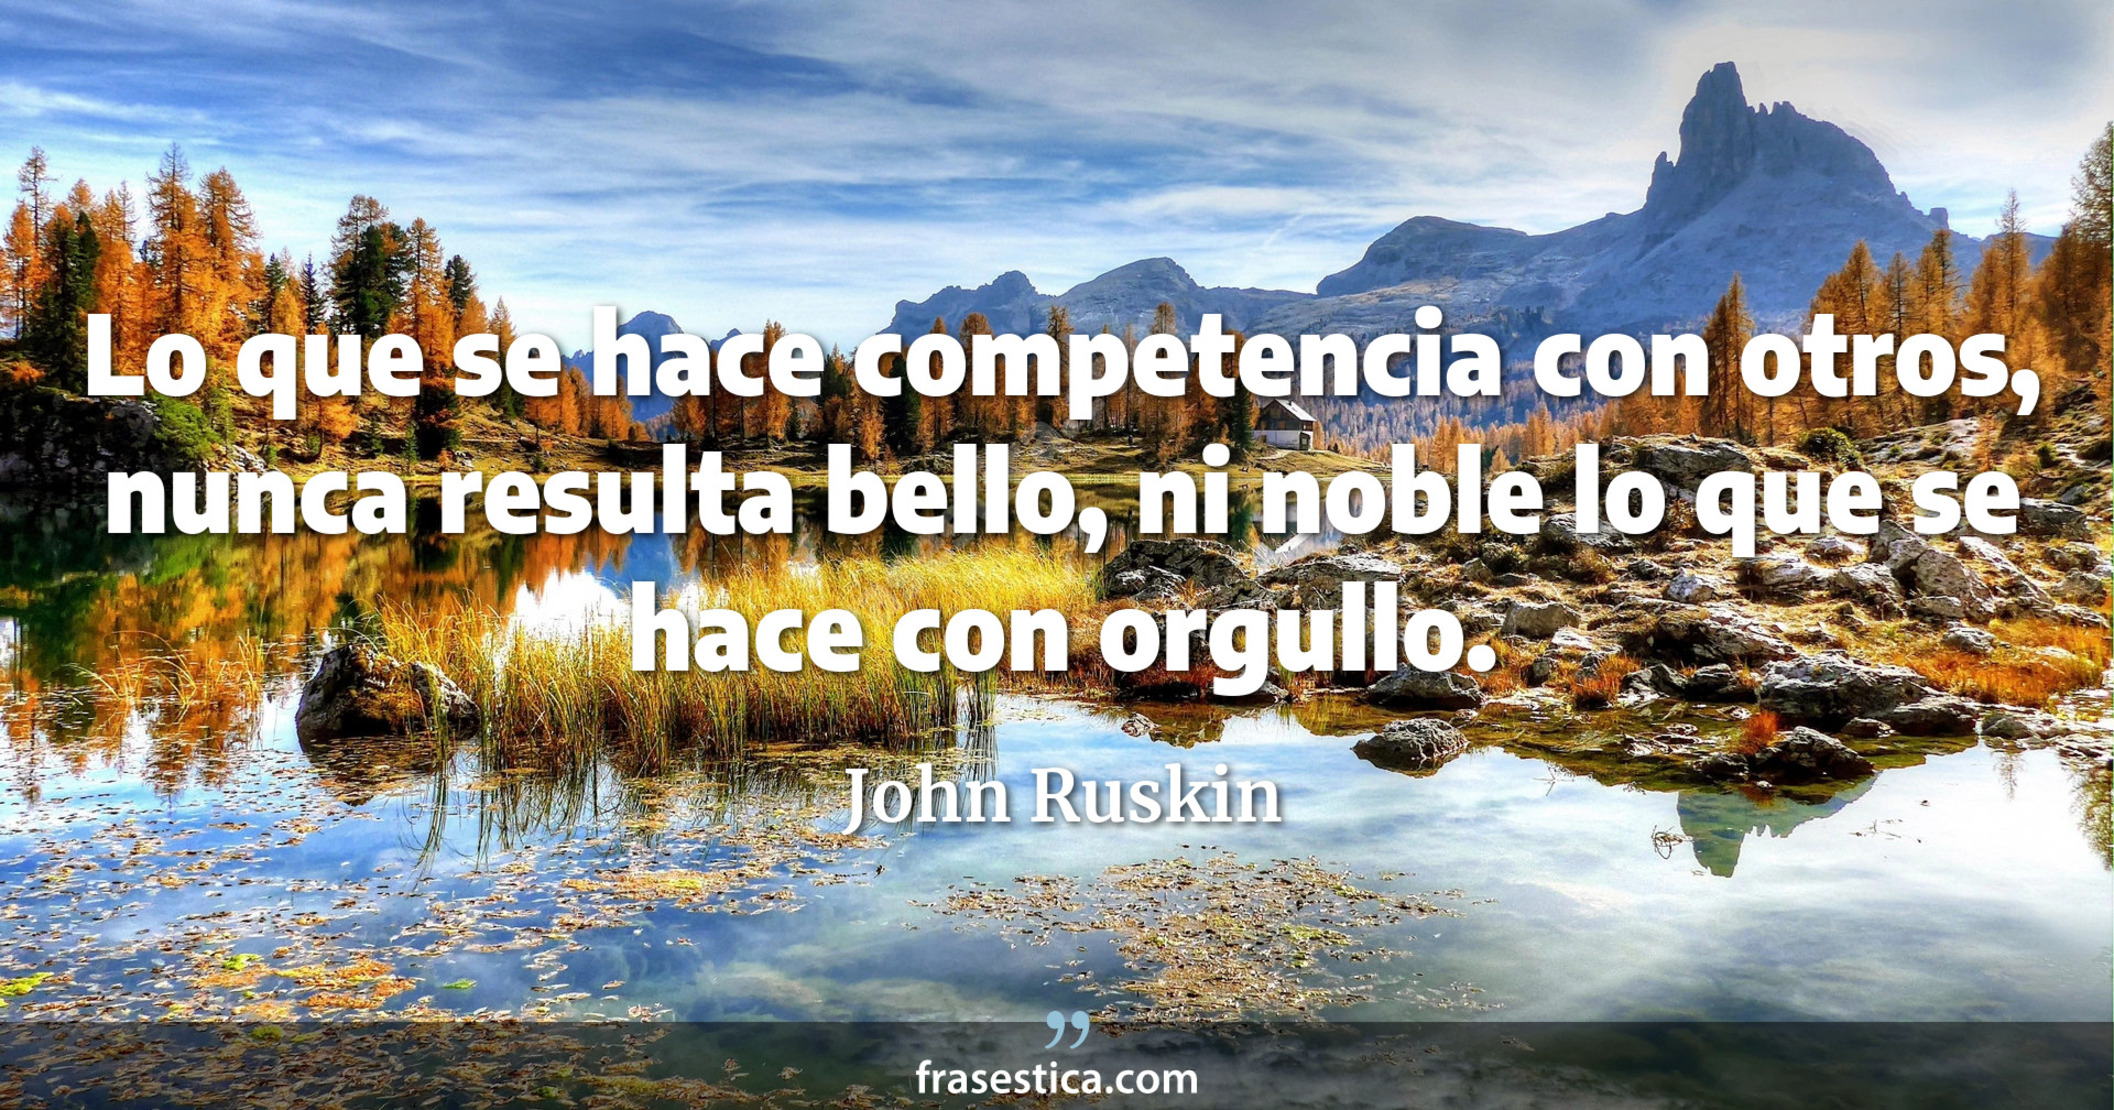 Lo que se hace competencia con otros, nunca resulta bello, ni noble lo que se hace con orgullo. - John Ruskin